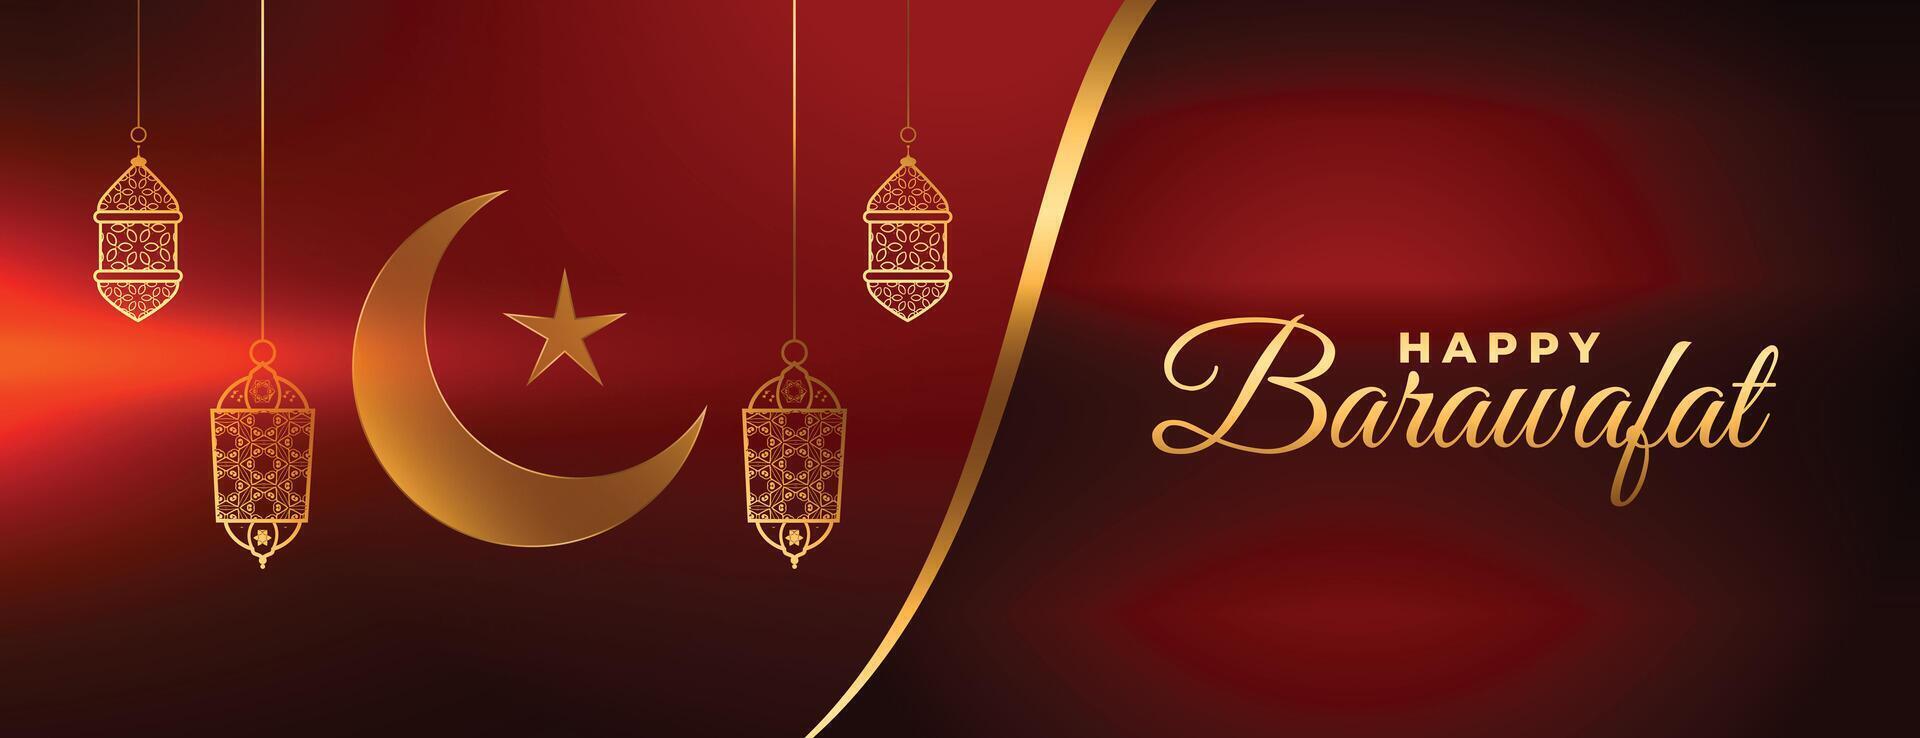 gelukkig barawafat glimmend Islamitisch rood banier ontwerp vector